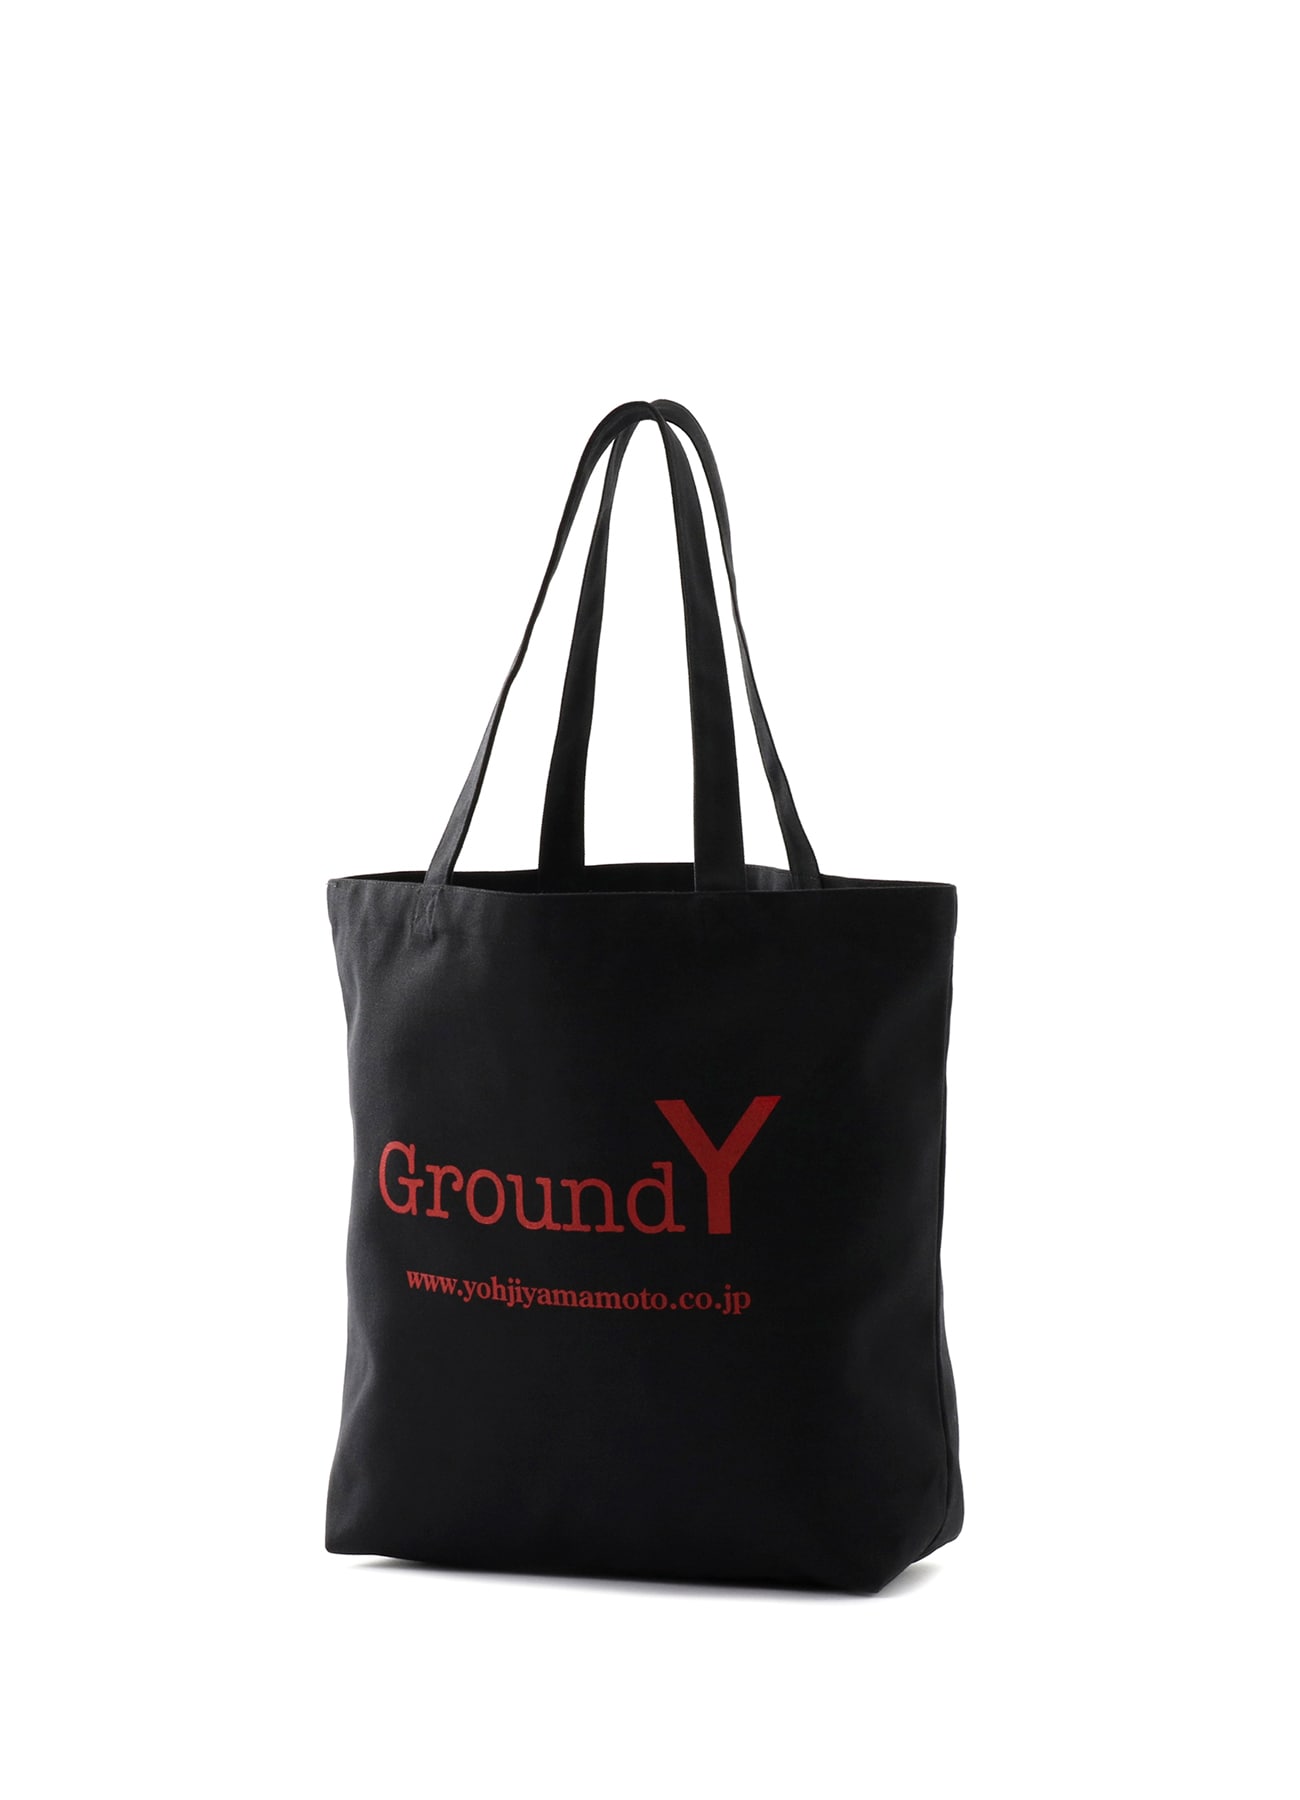 BAG | GroundY | 【Official】 THE SHOP YOHJI YAMAMOTO